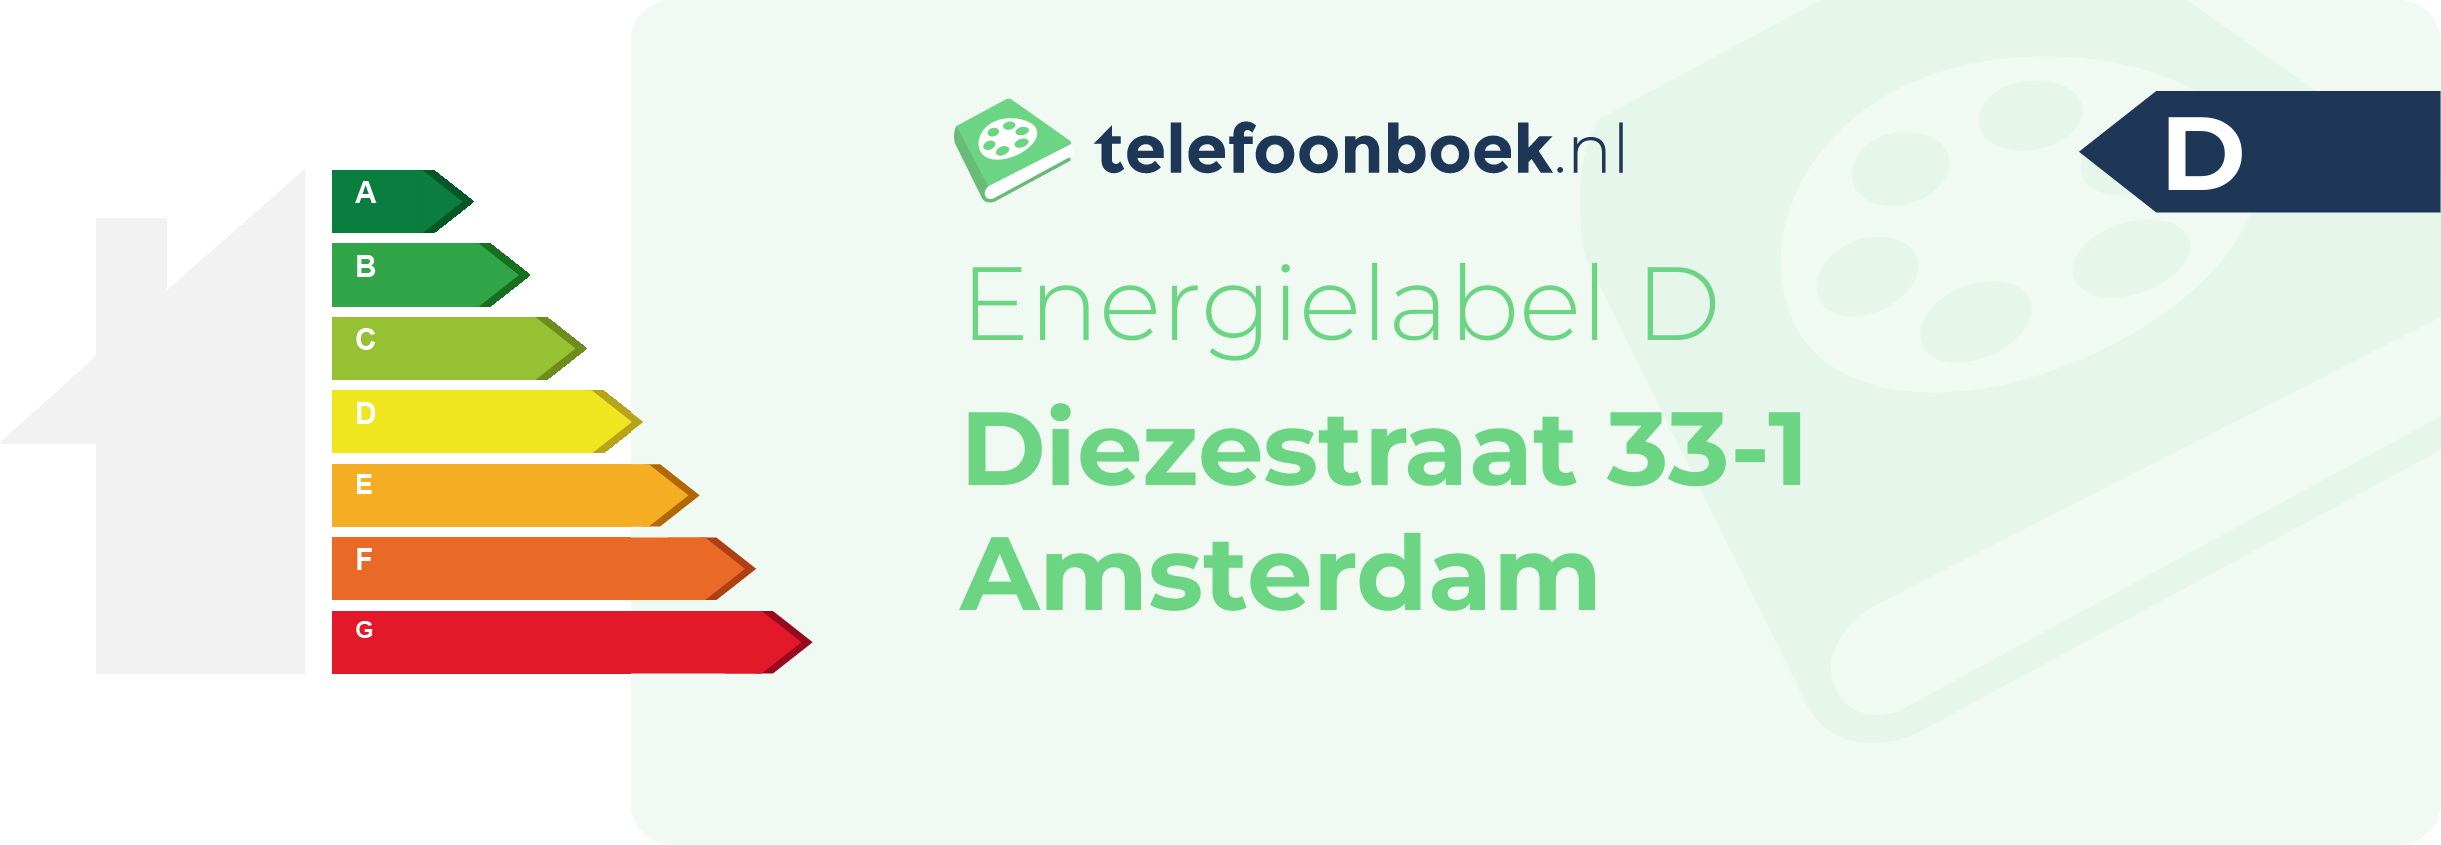 Energielabel Diezestraat 33-1 Amsterdam